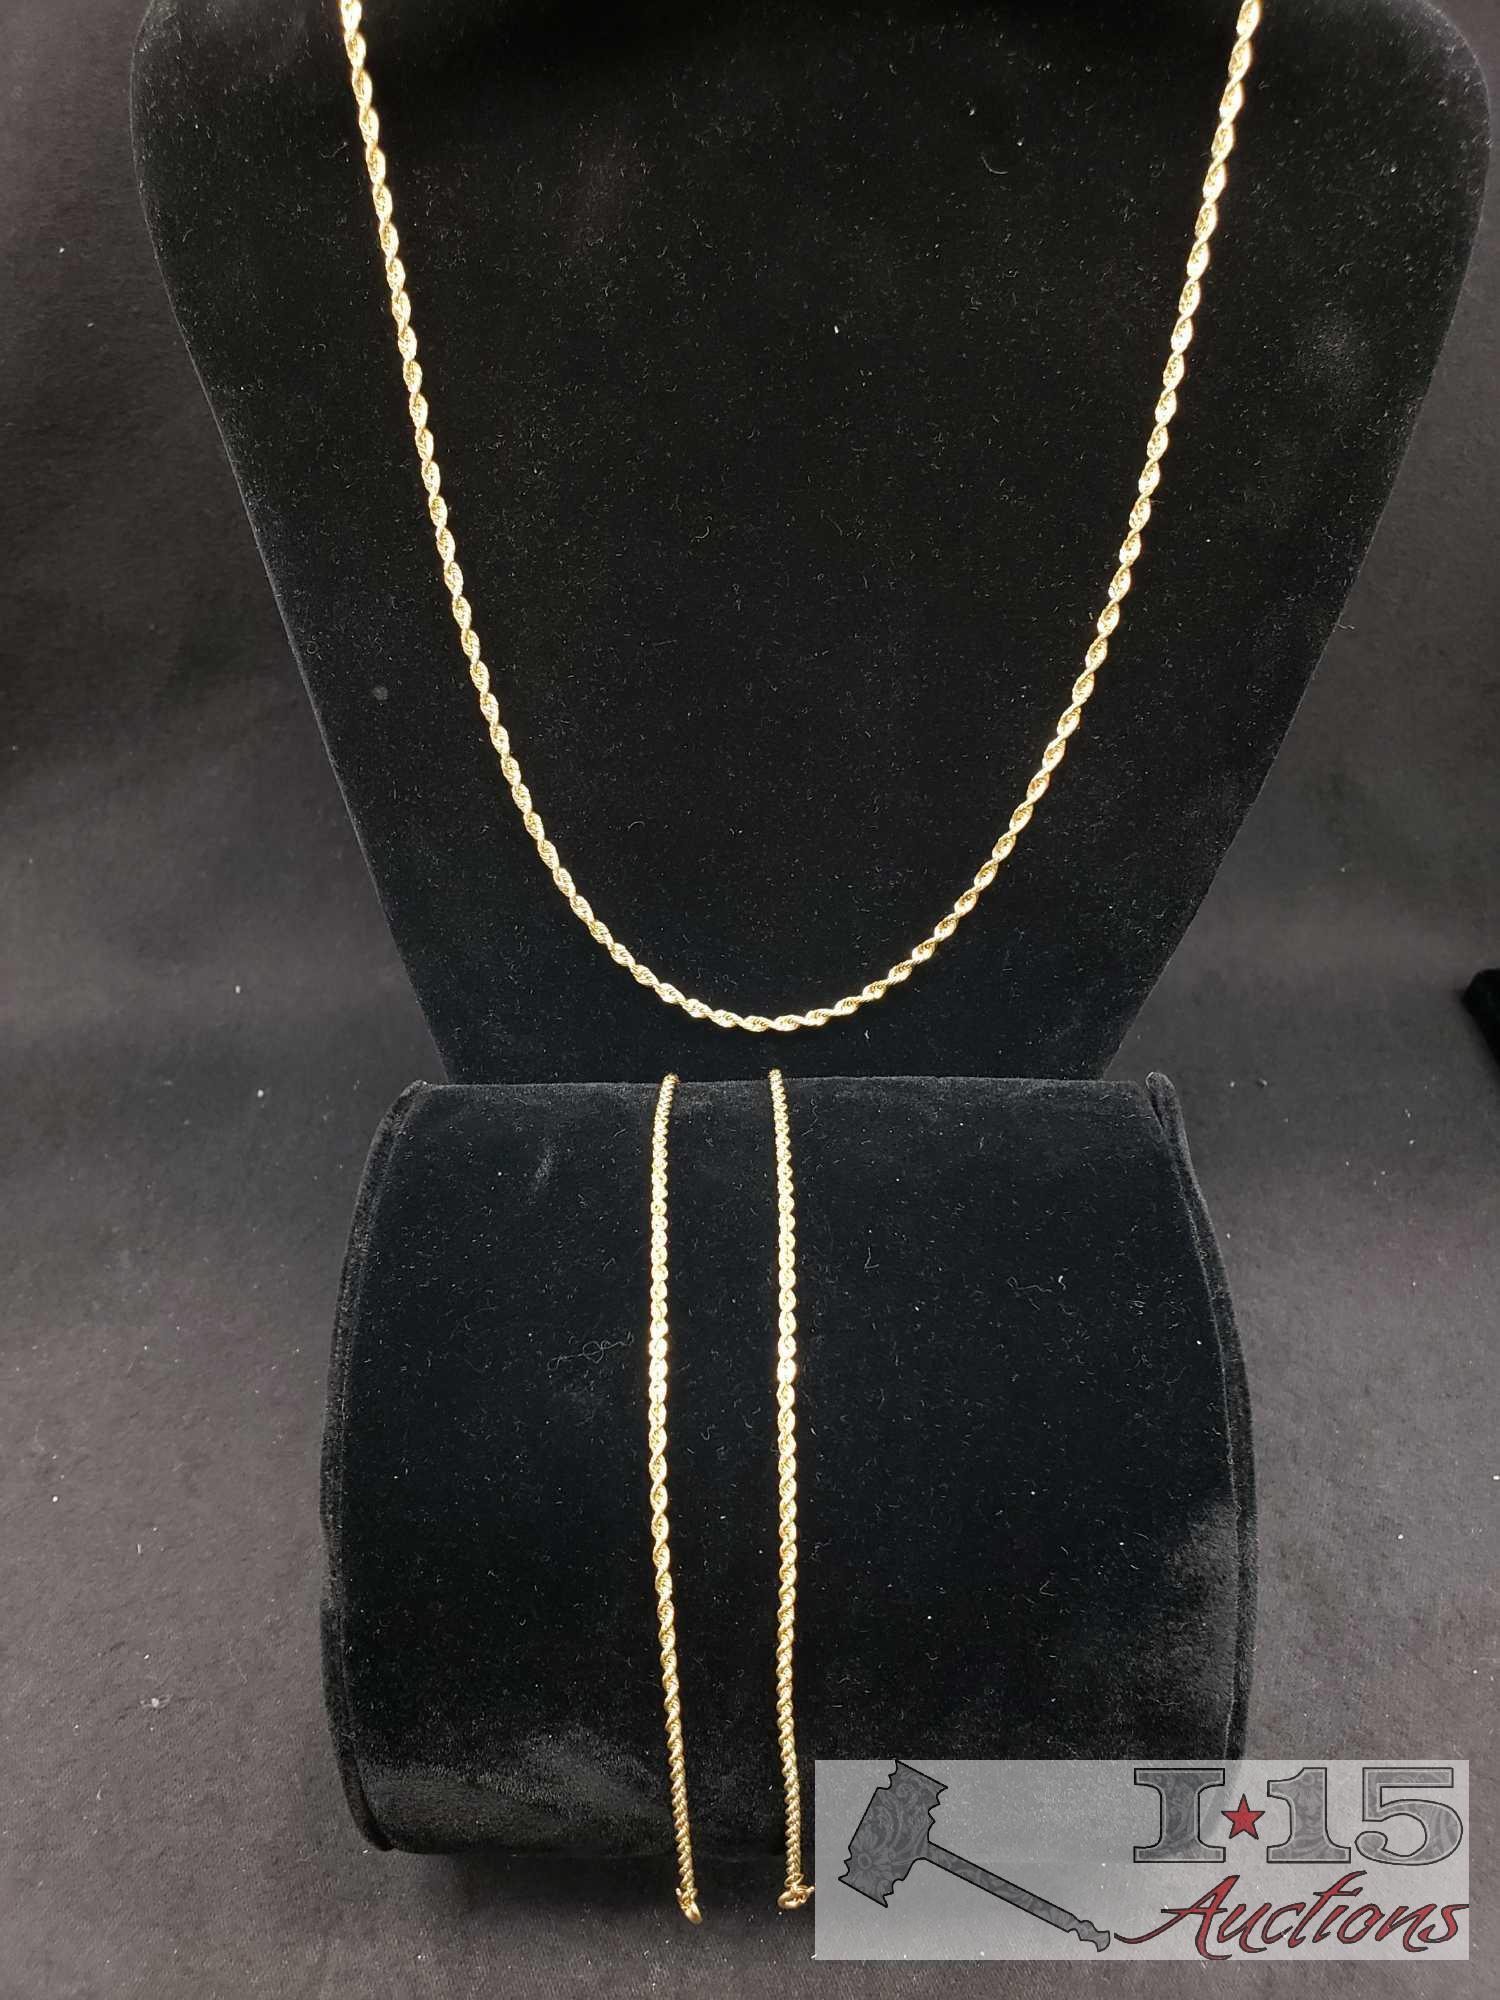 Mark Anthony 14k Gold Necklace and 2 Bracelets Marked 14k